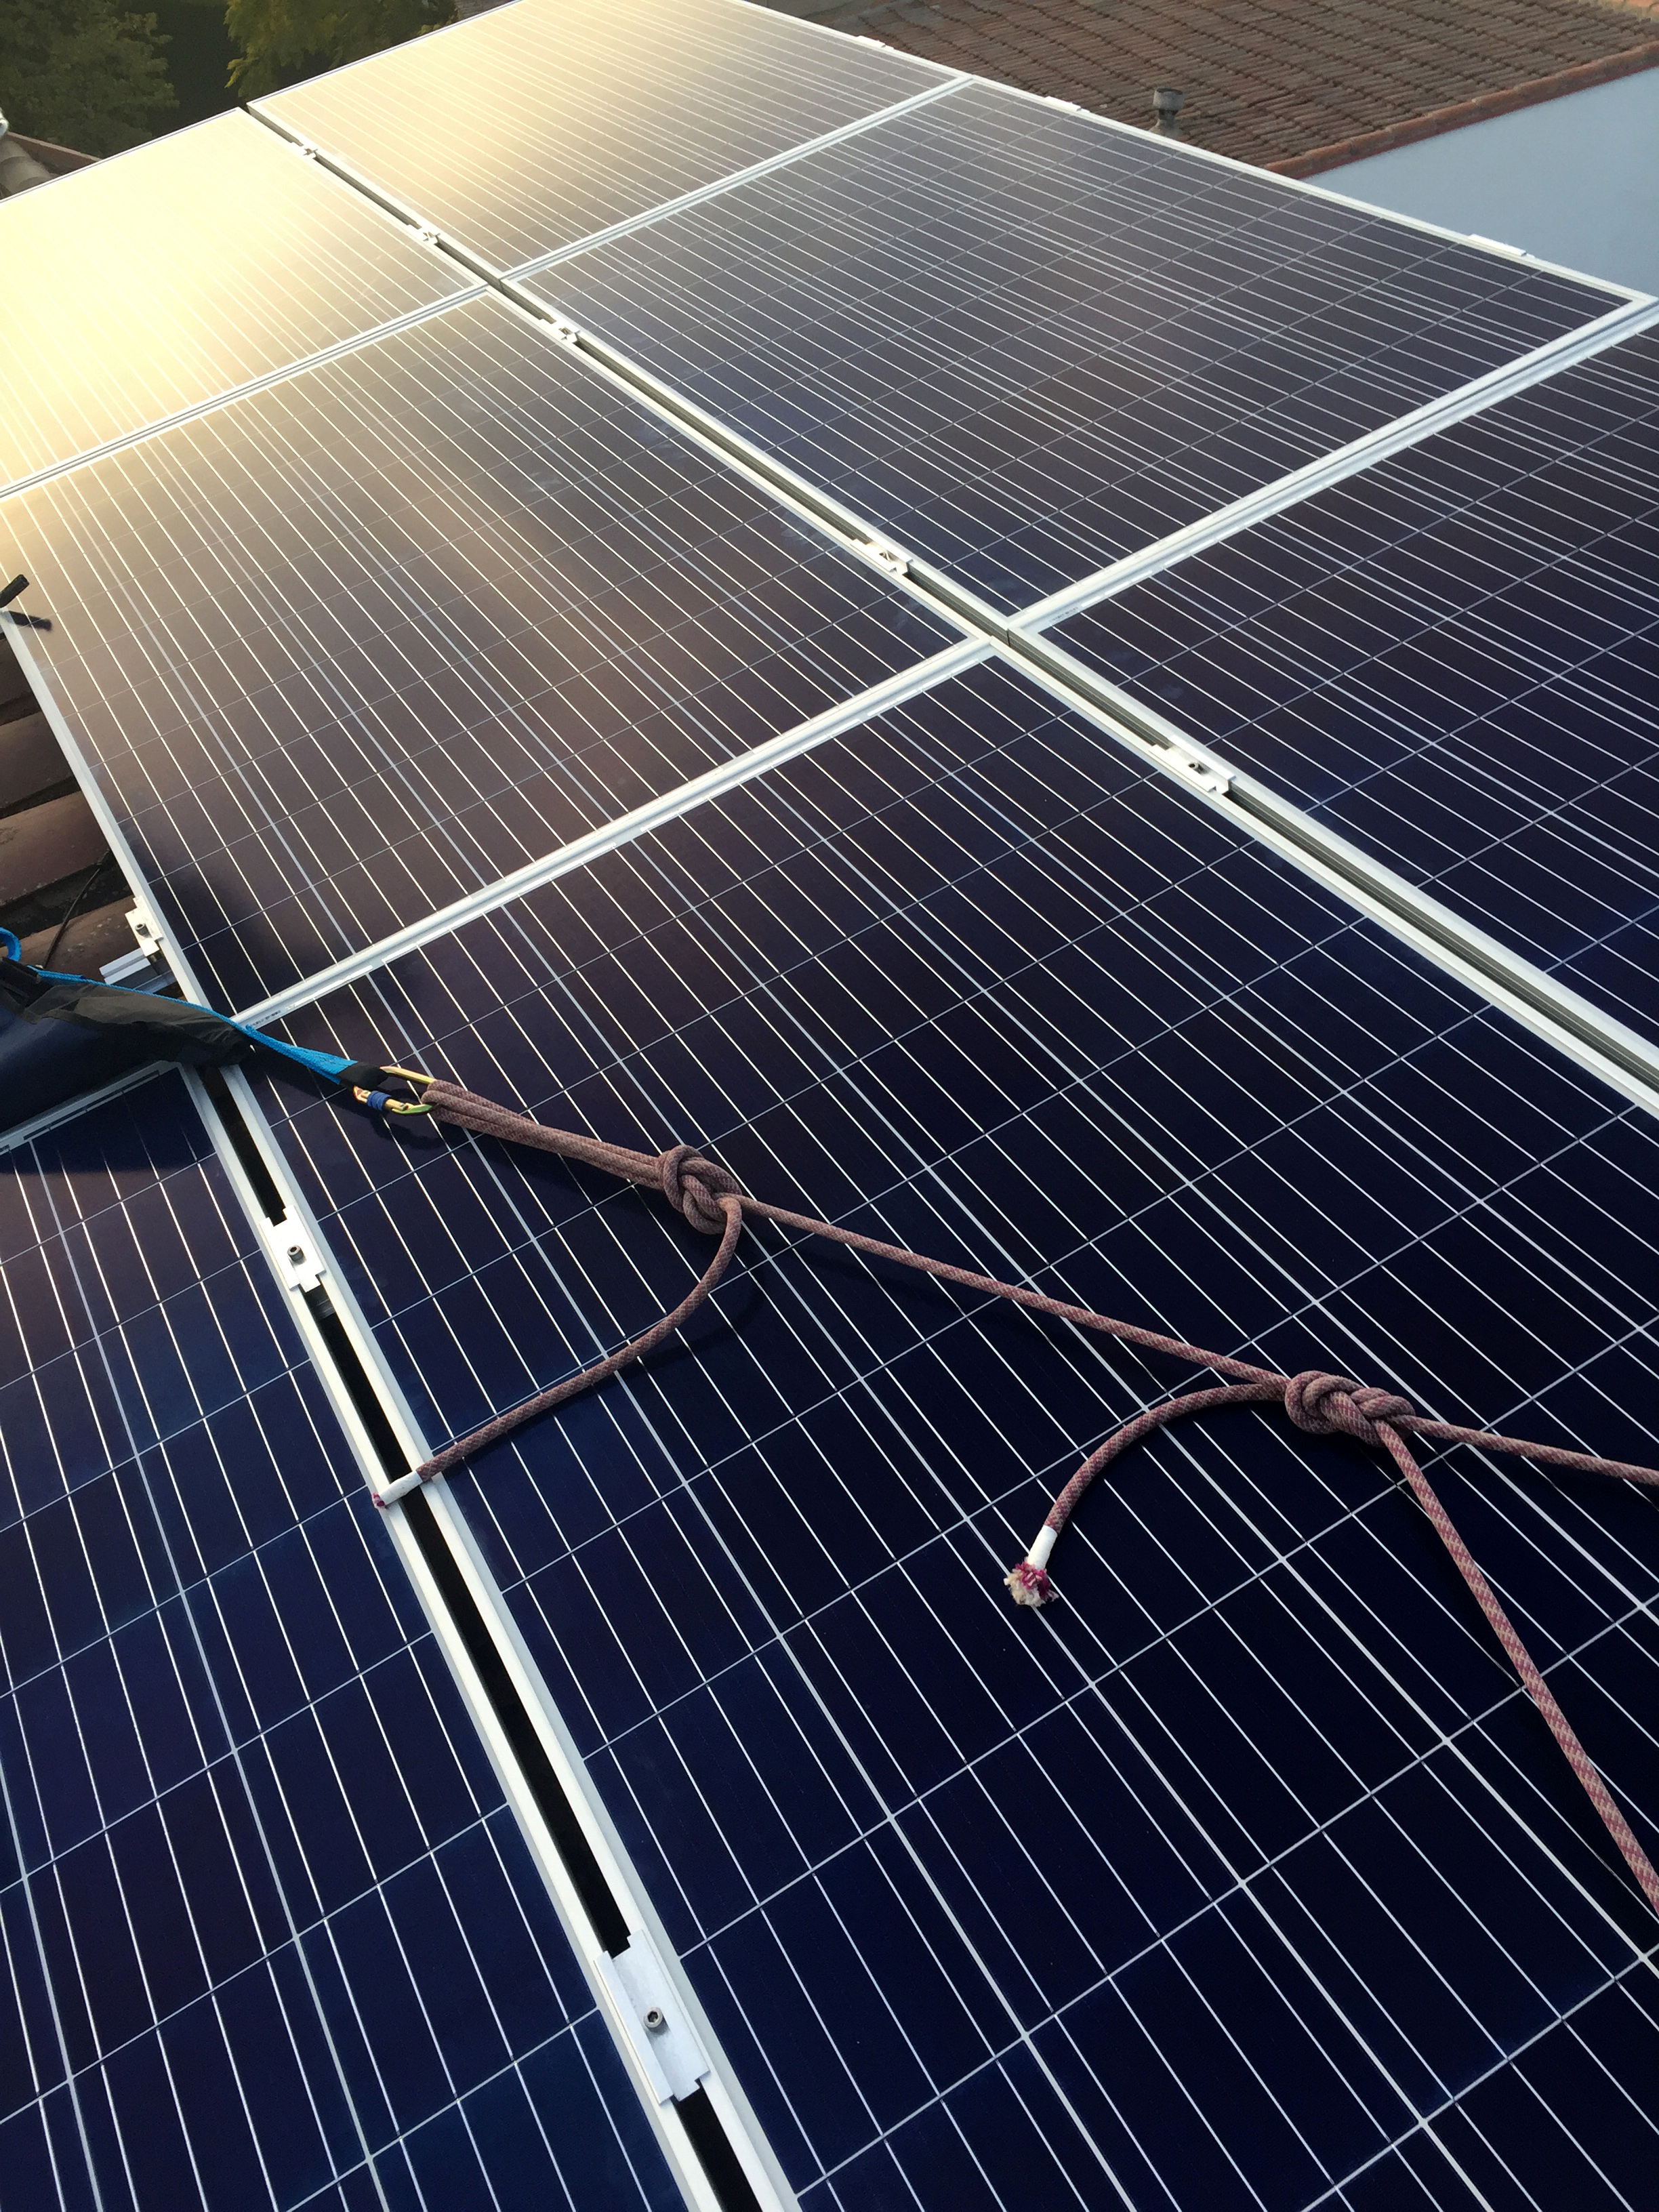 placas solares fotovoltacas y por encima la línea de vida instalada que permite a los trabajadores de Jorfe realizar trabajos en altura sin peligro de caida